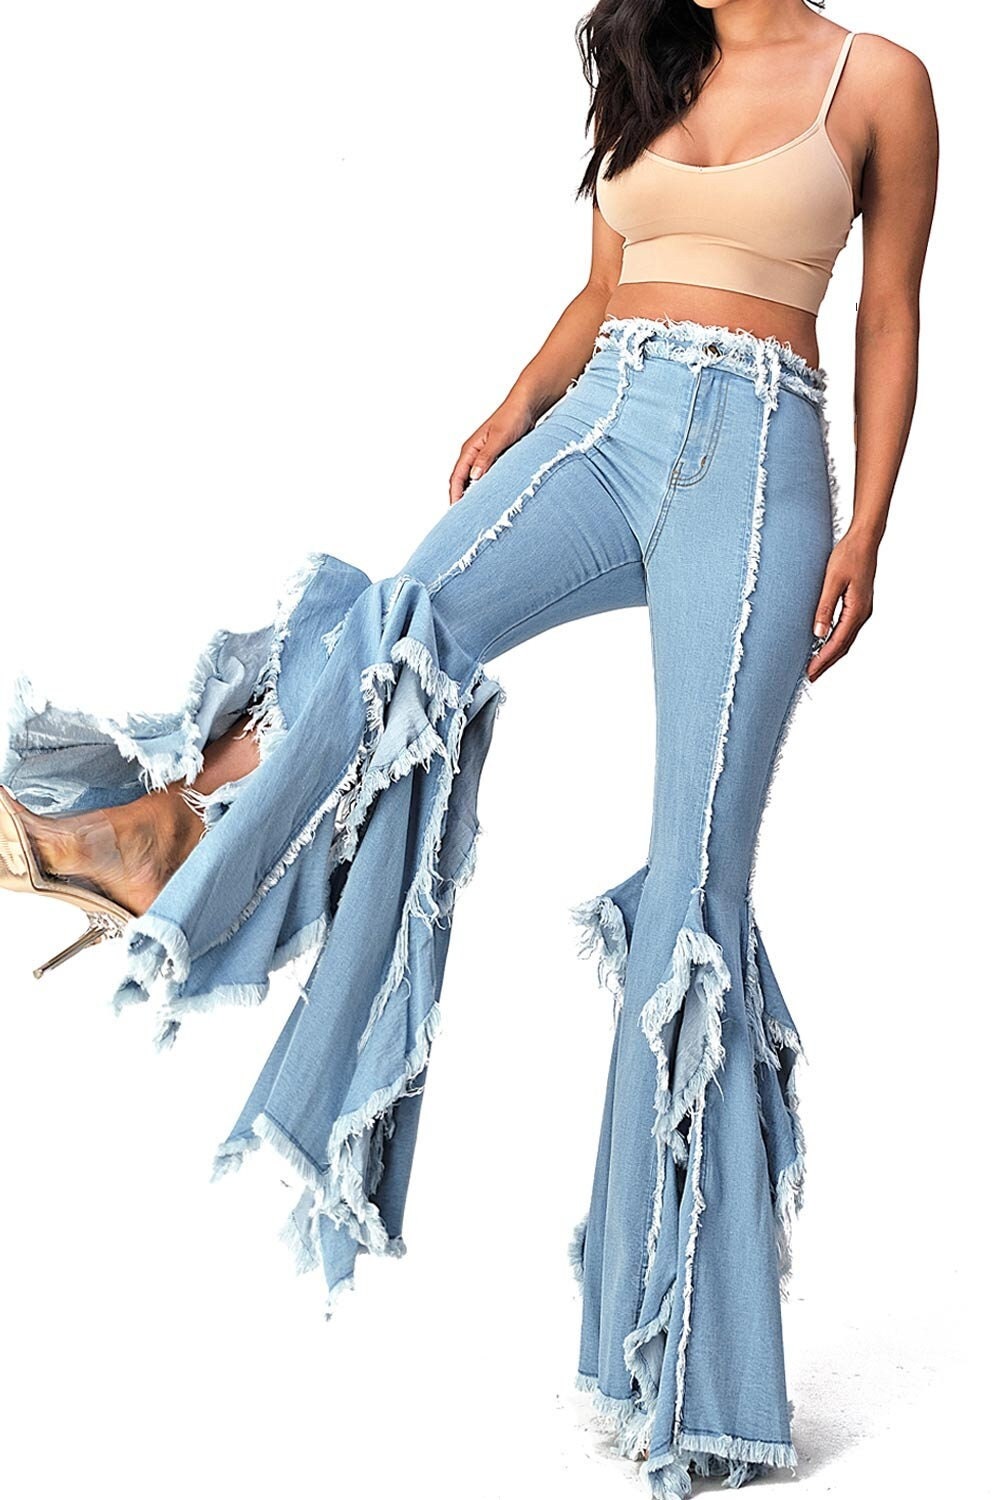 Ruffled Jeans Etsy